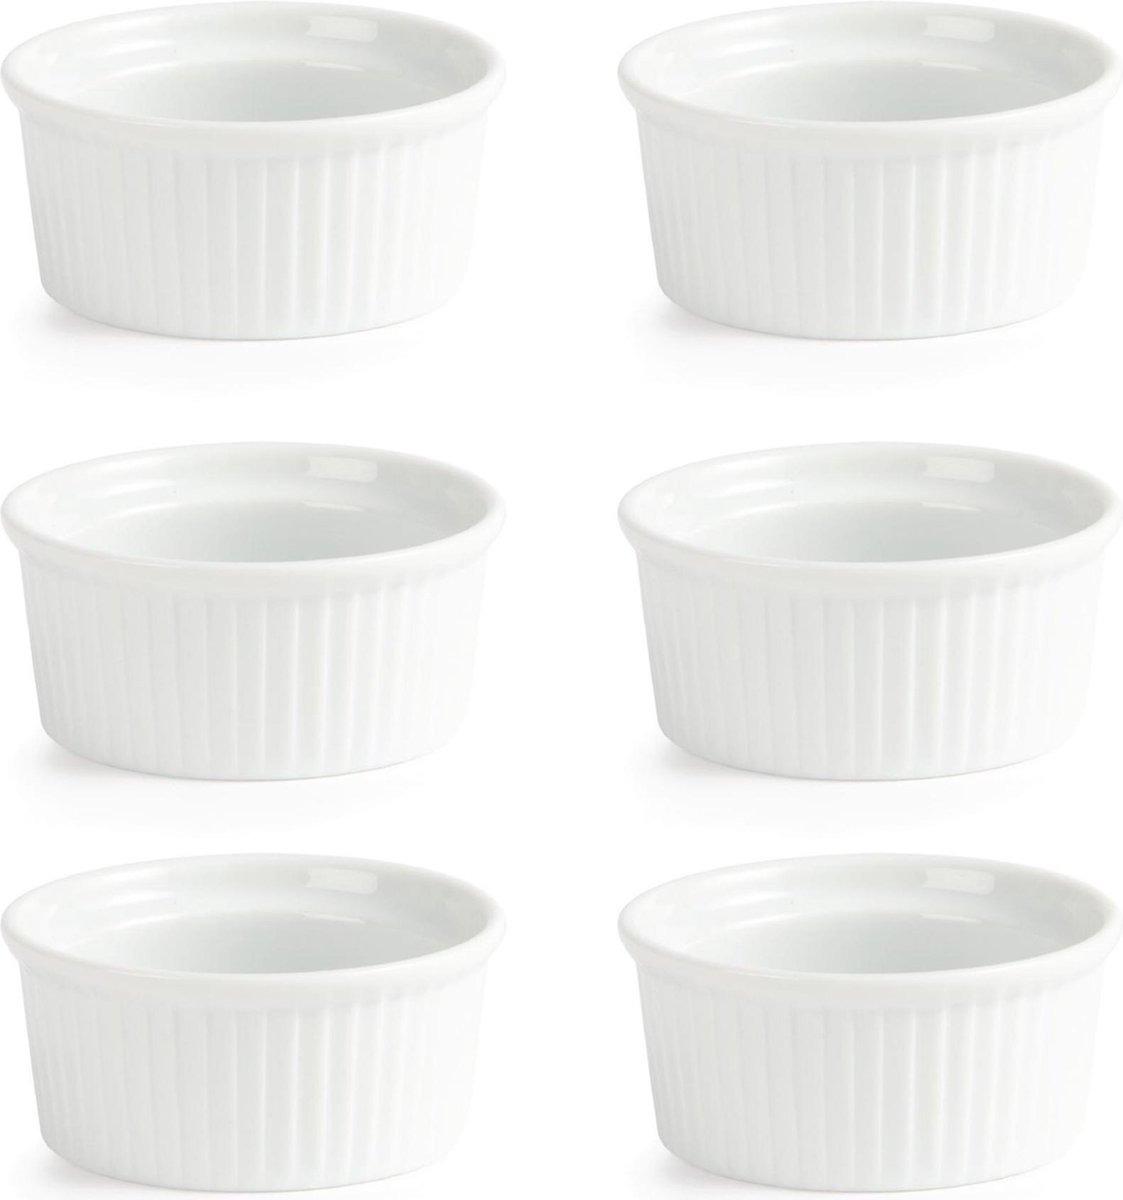 6x Crème brulée schaaltje / Ramekin - 9 cm - Olympia - geschikt voor oven, vriezer en vaatwasser - Olympia